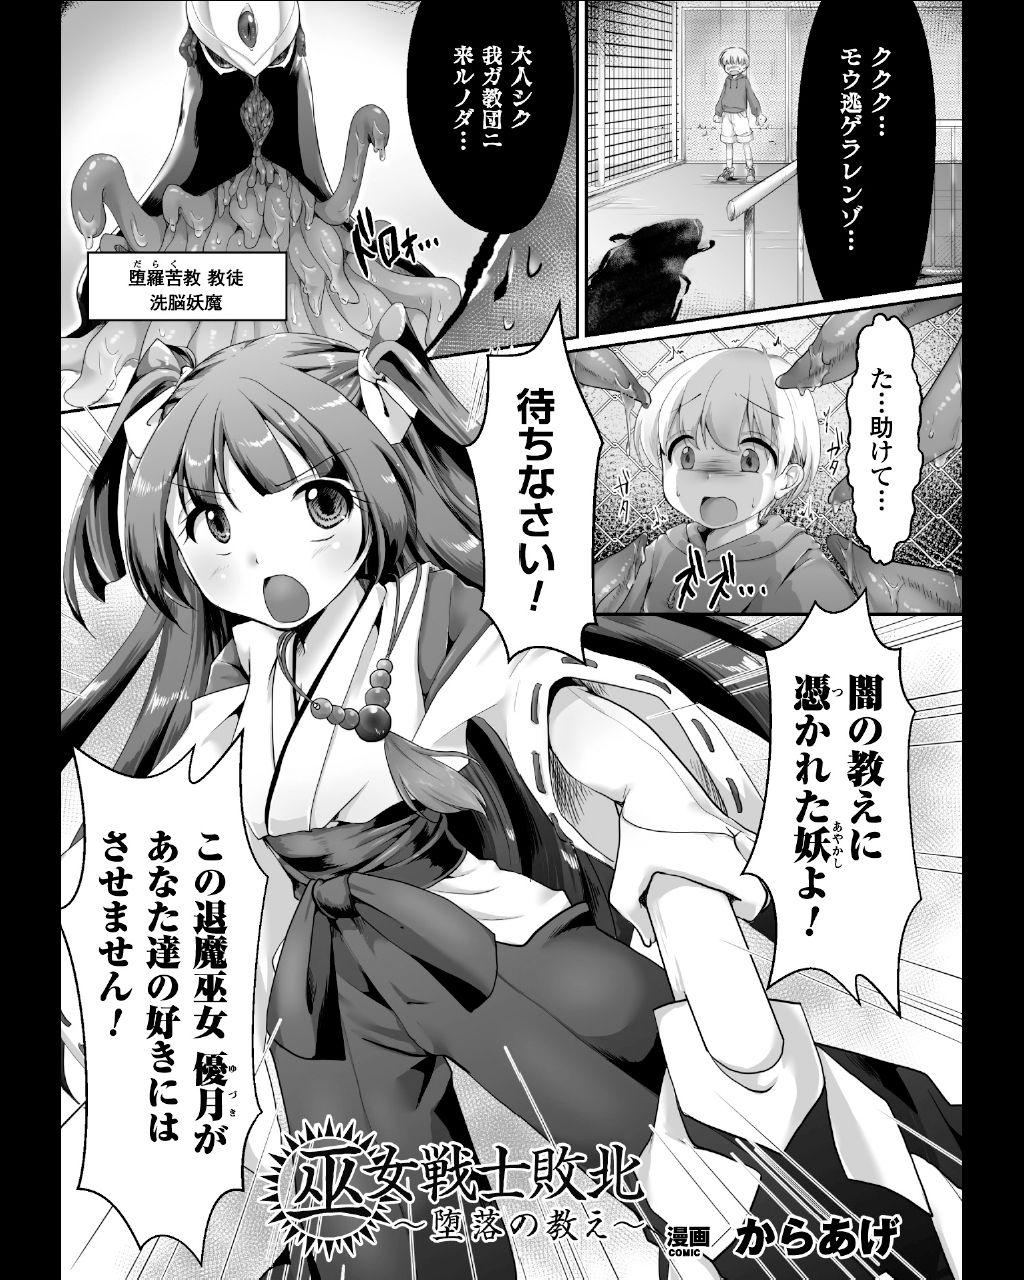 Seigi no Heroine Kangoku File Vol. 11 24